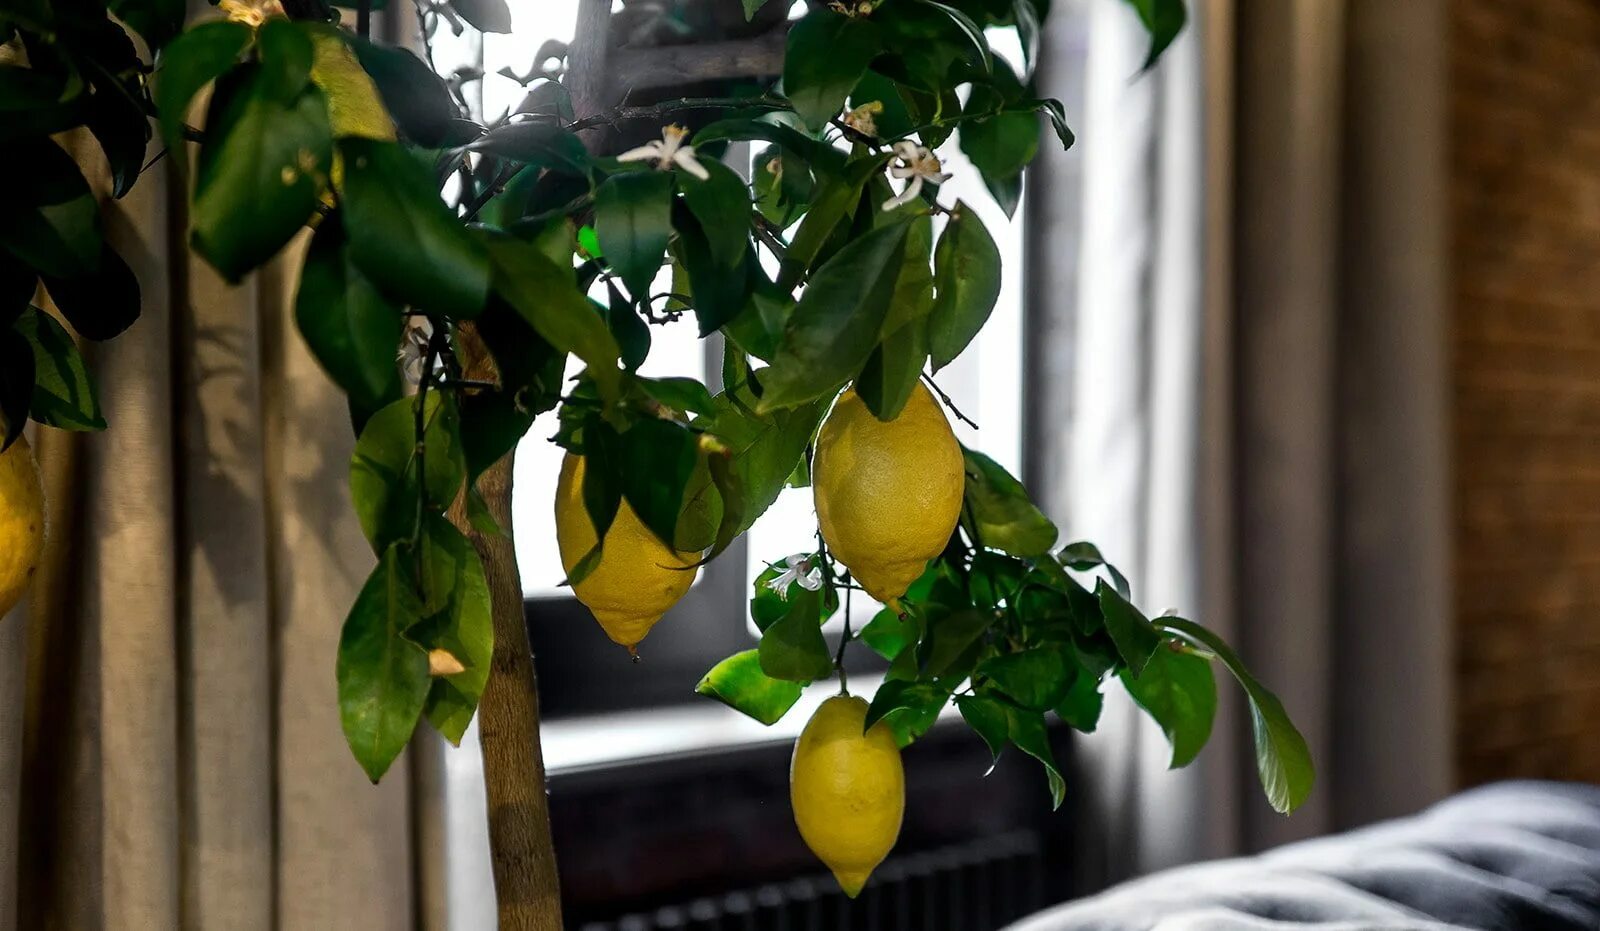 Цитрус (комнатное растение) лимон Мейера. Лимон дерево. Цитрус (комнатное растение) лимон Лунарио. Лимон Мейера листья.